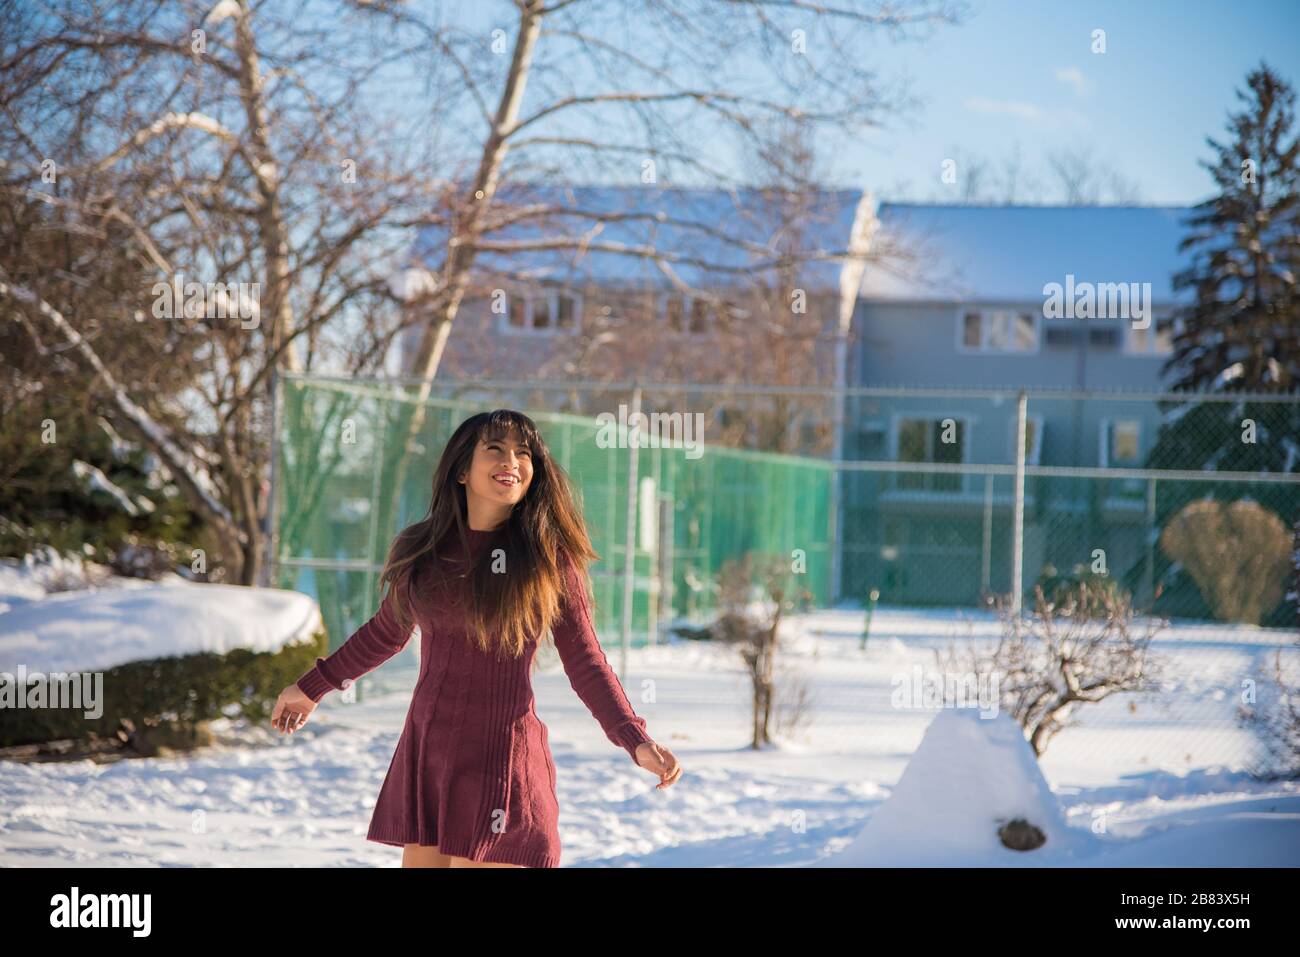 Frau, die nach dem Schneesturm am sonnigen Tag Spaß hat und Schnee genießt Stockfoto